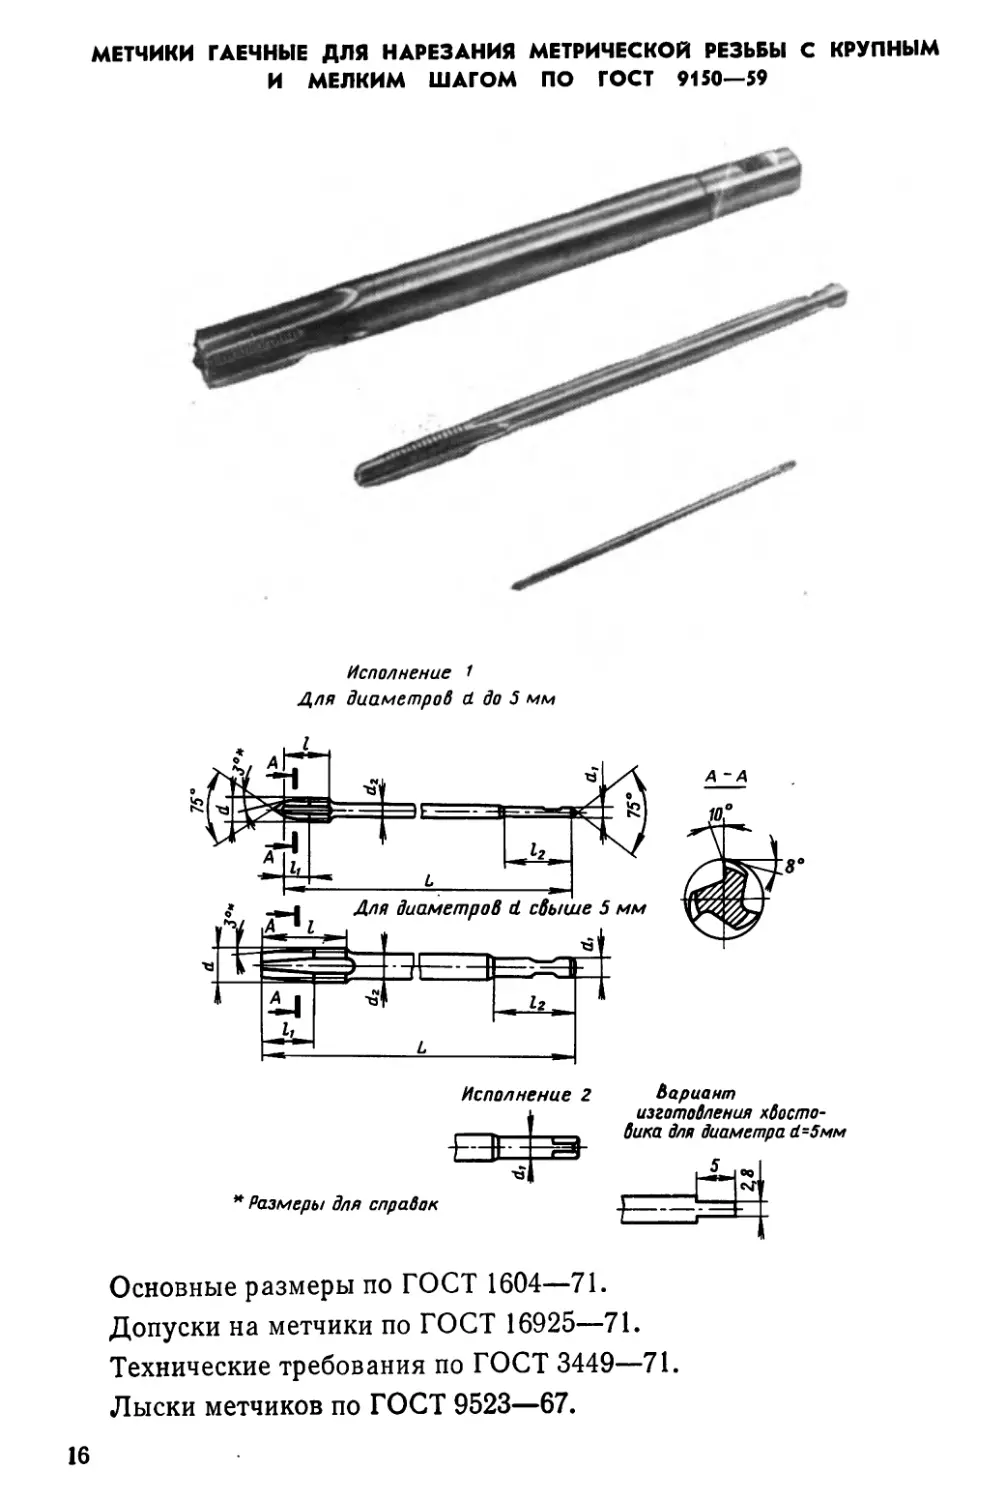 Метчики гаечные для нарезания метрической резьбы с крупным и мелким шагом по ГОСТ 9150—59